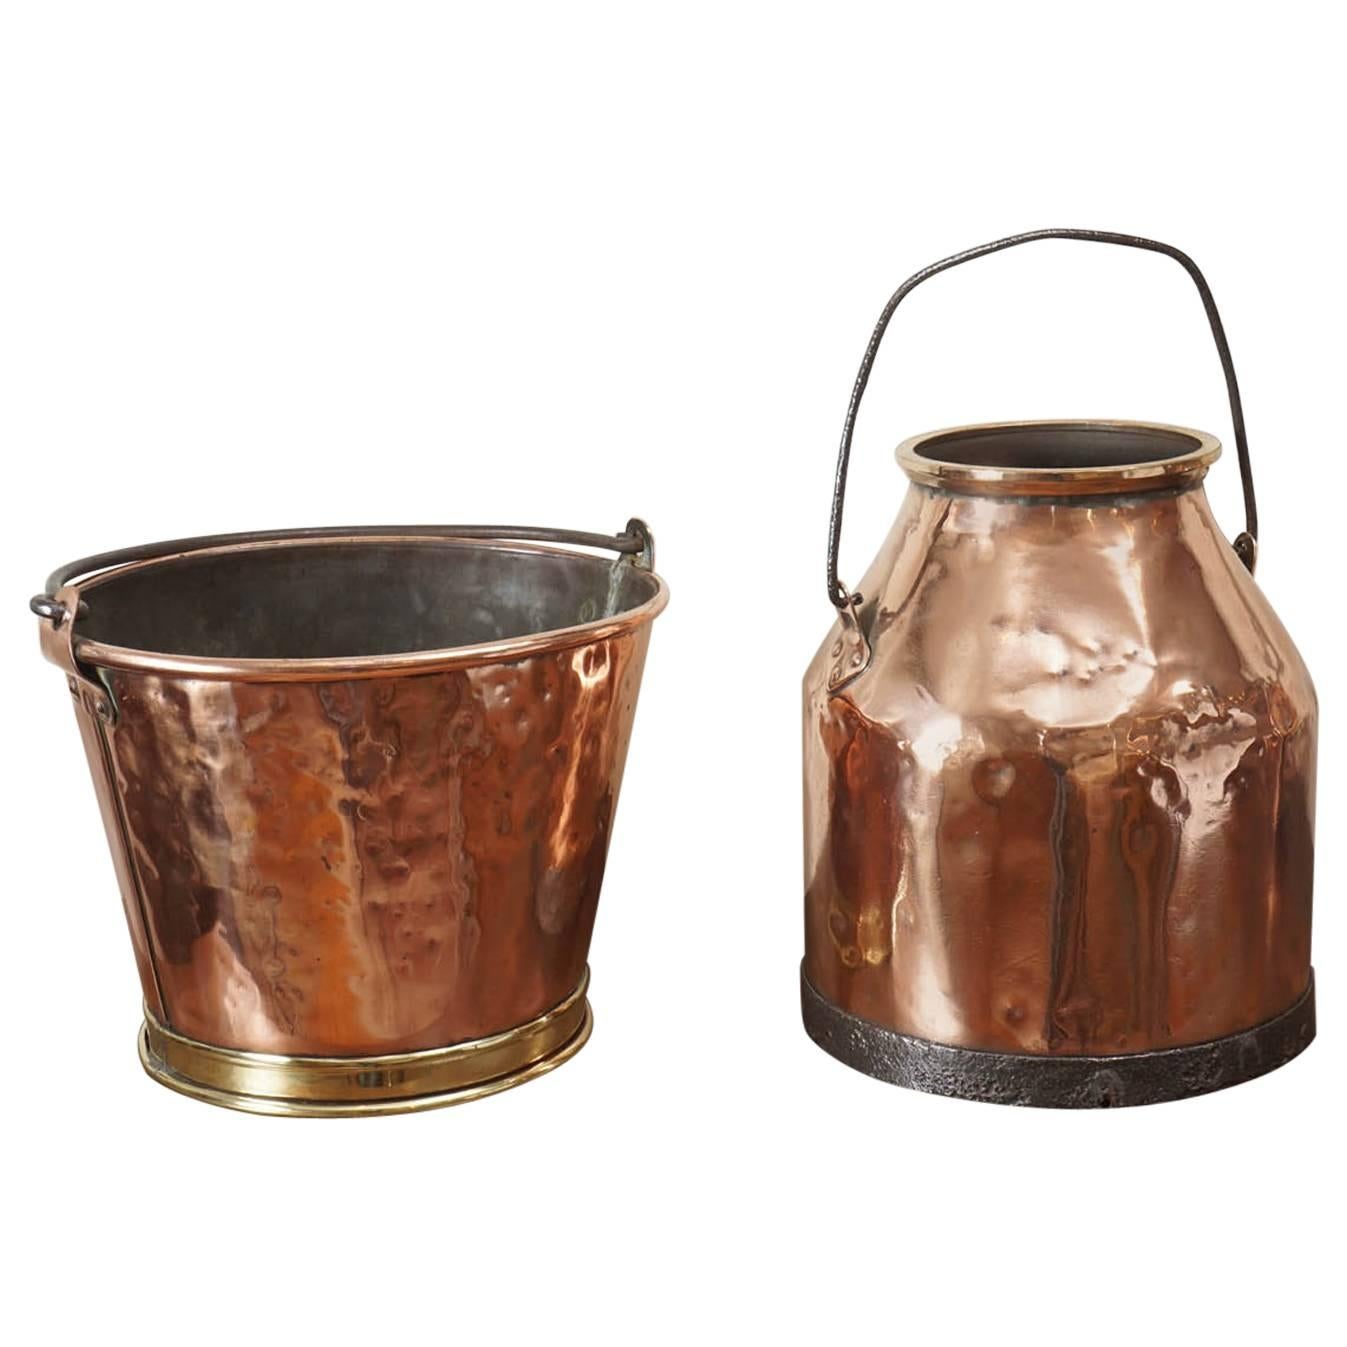 Copper Milk Jug and Copper Flower Pot